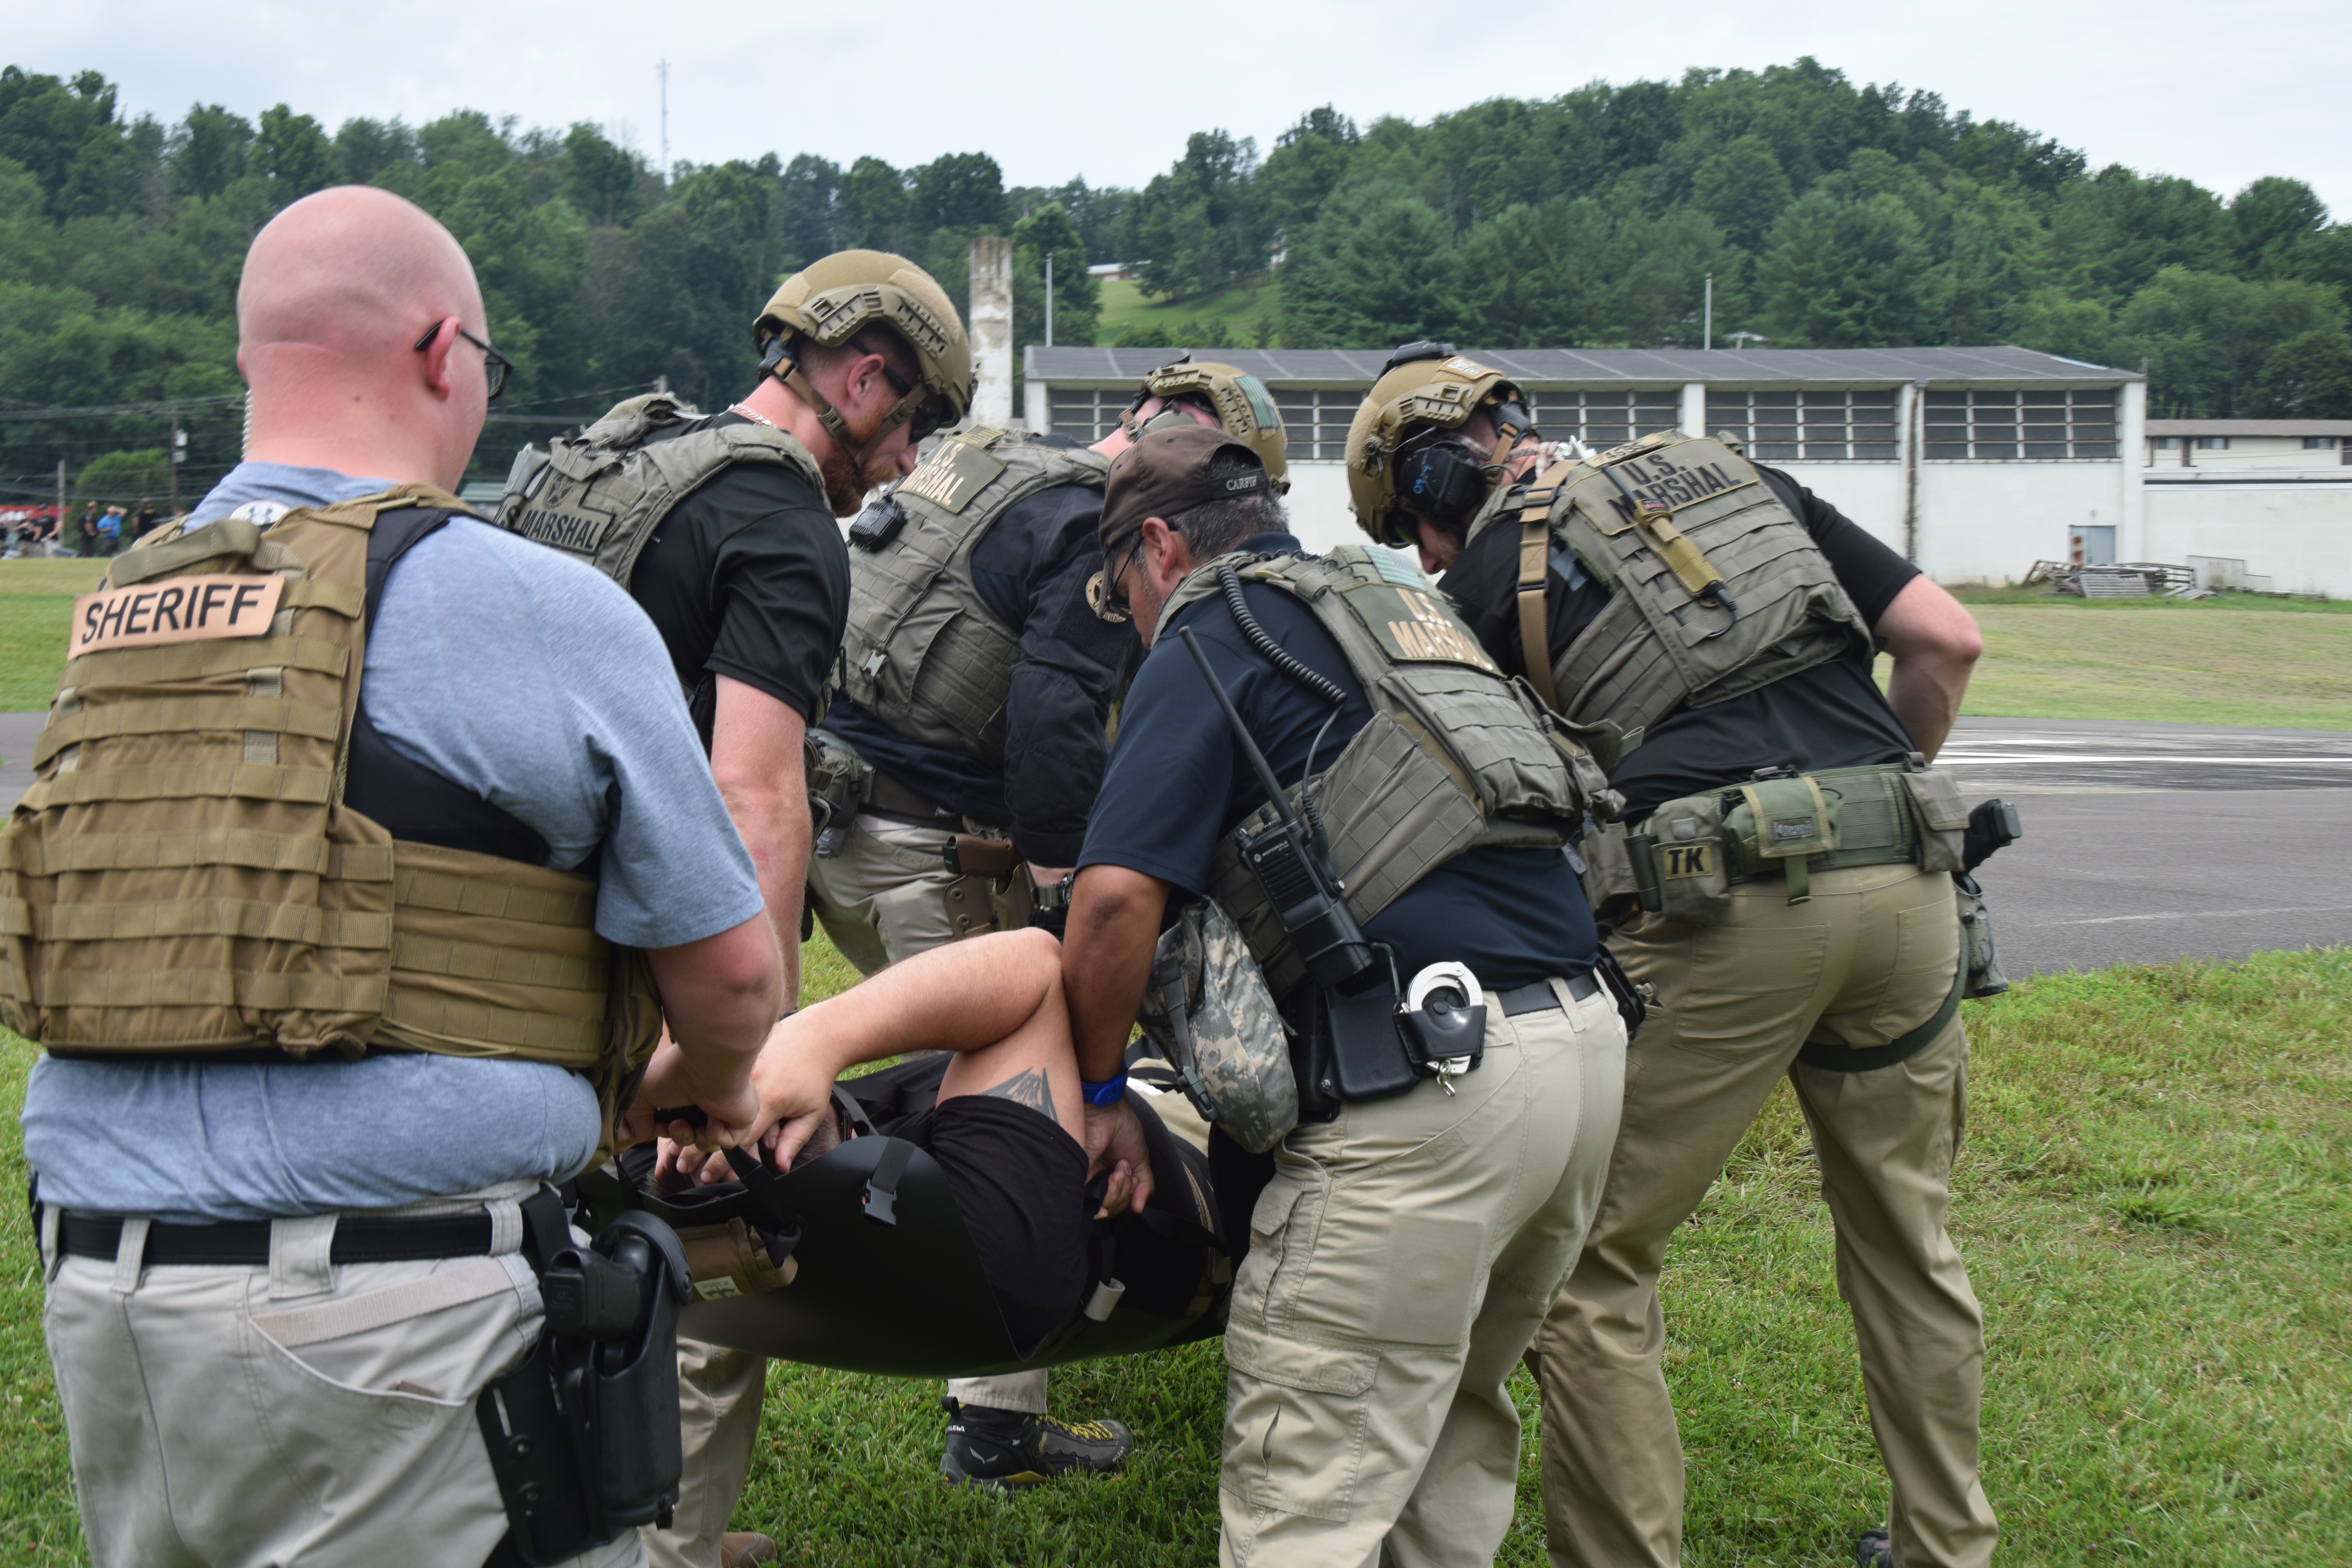 Imagen de oficiales transportando a sus compañeros durante los entrenamientos.